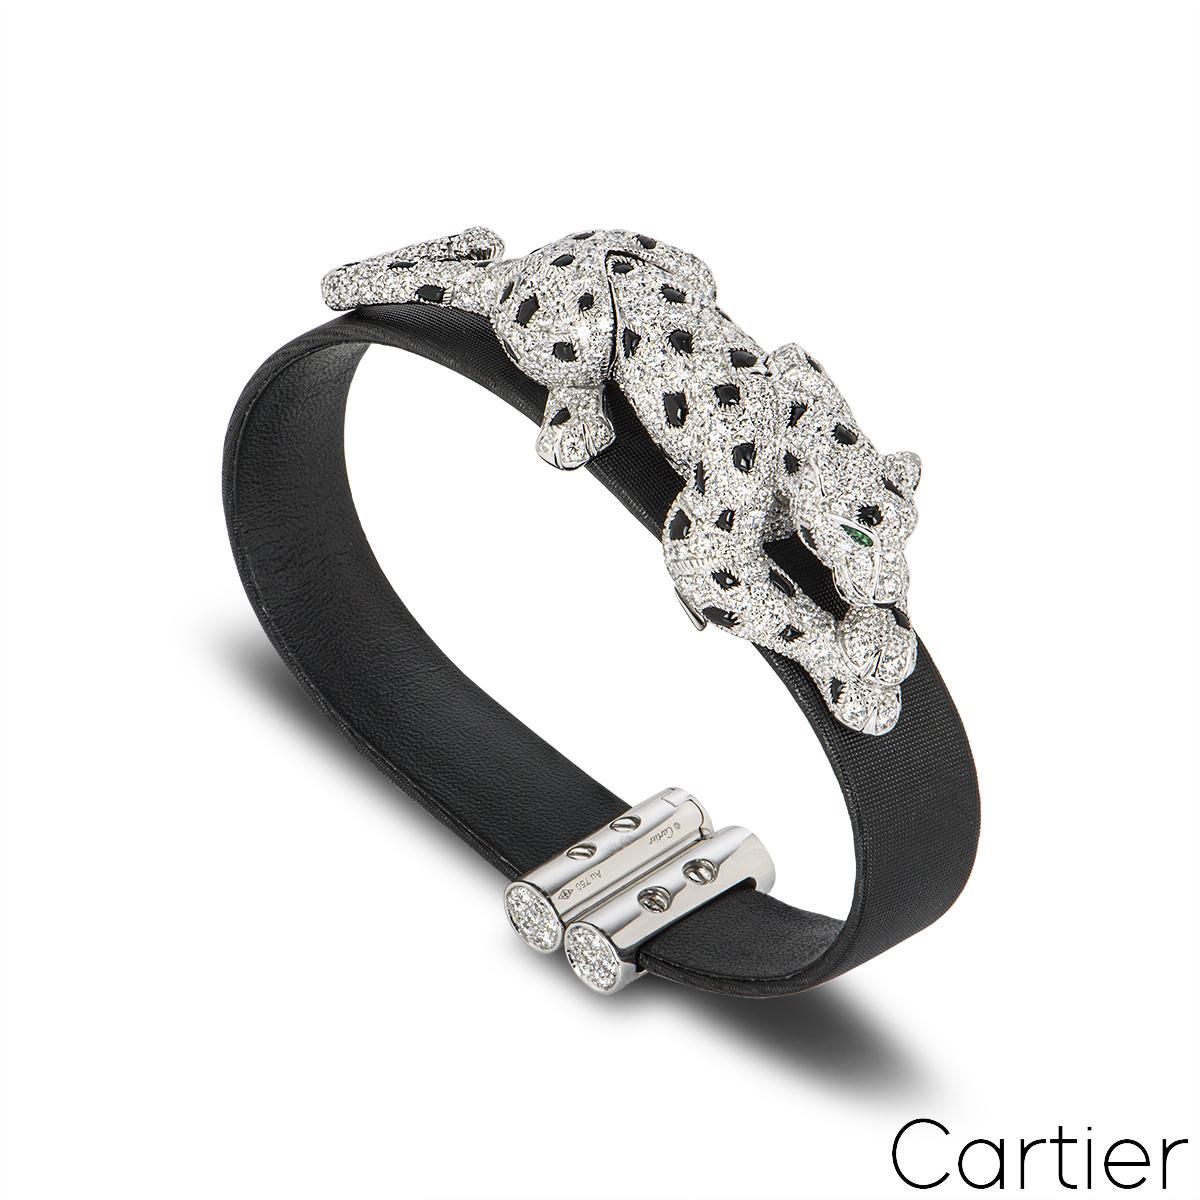 wallis simpson panther bracelet